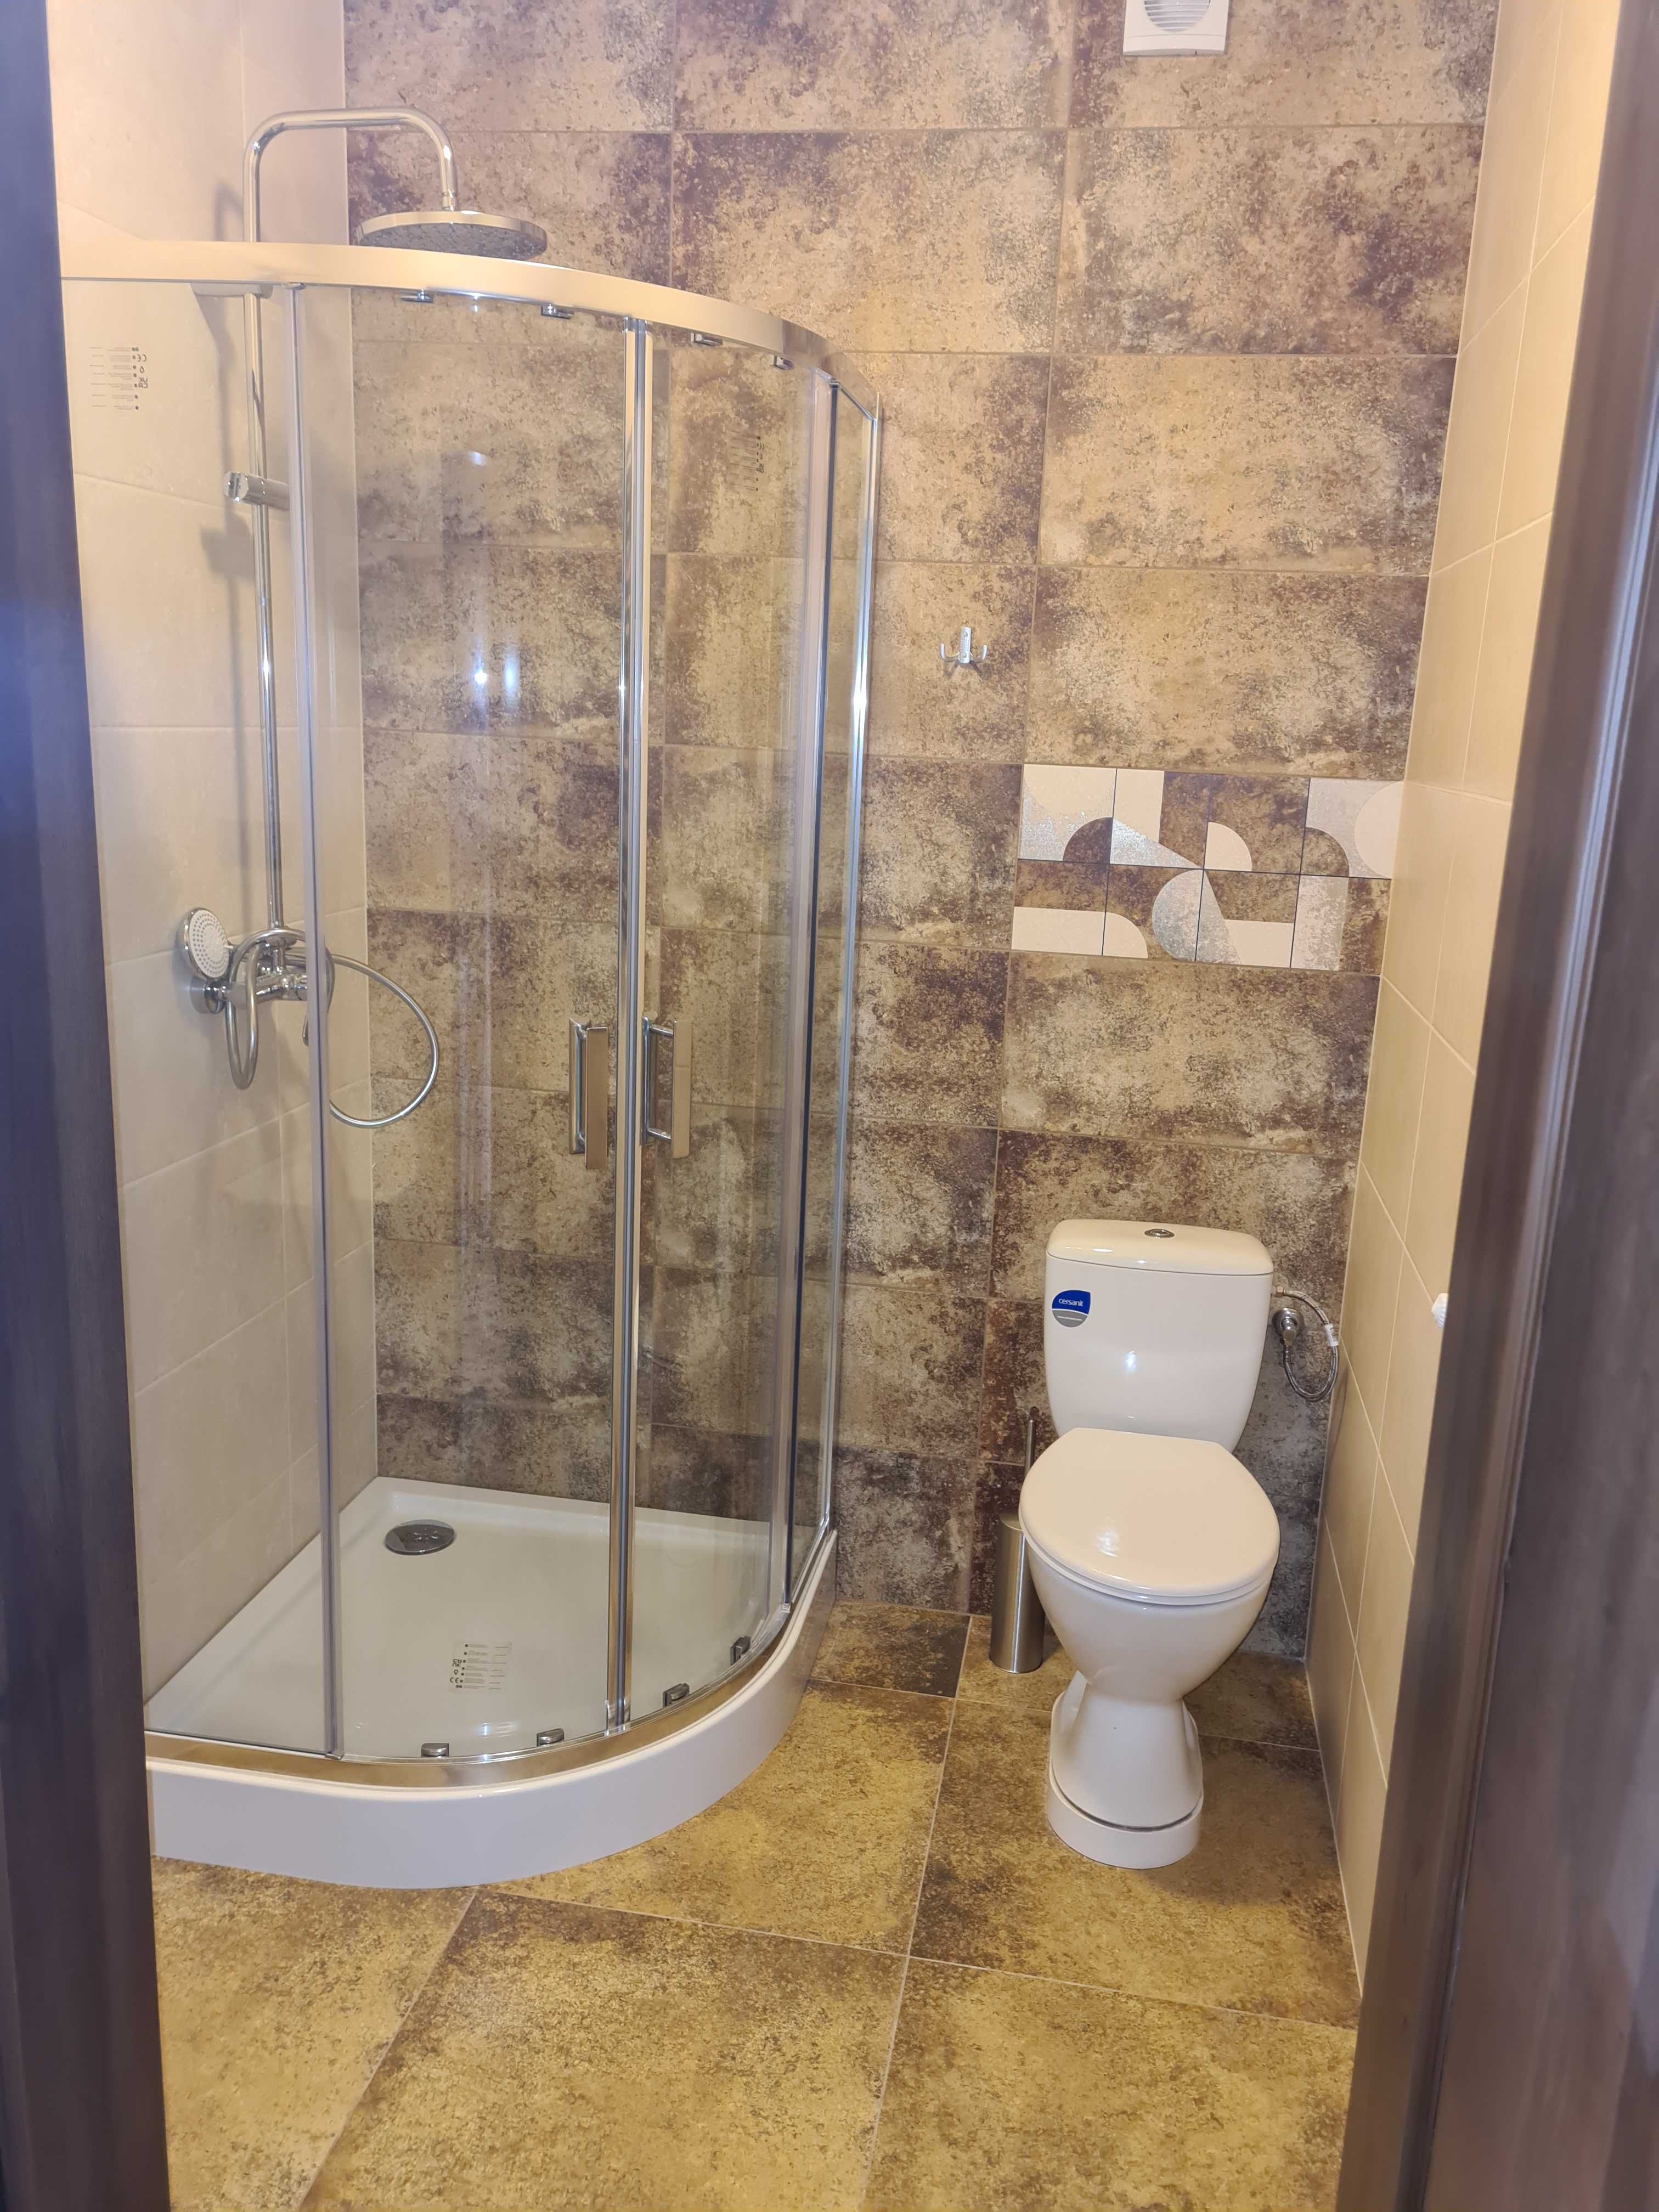 pokoje z łazienkami noclegi kwatery hostel кімнати з ванними кімнатами